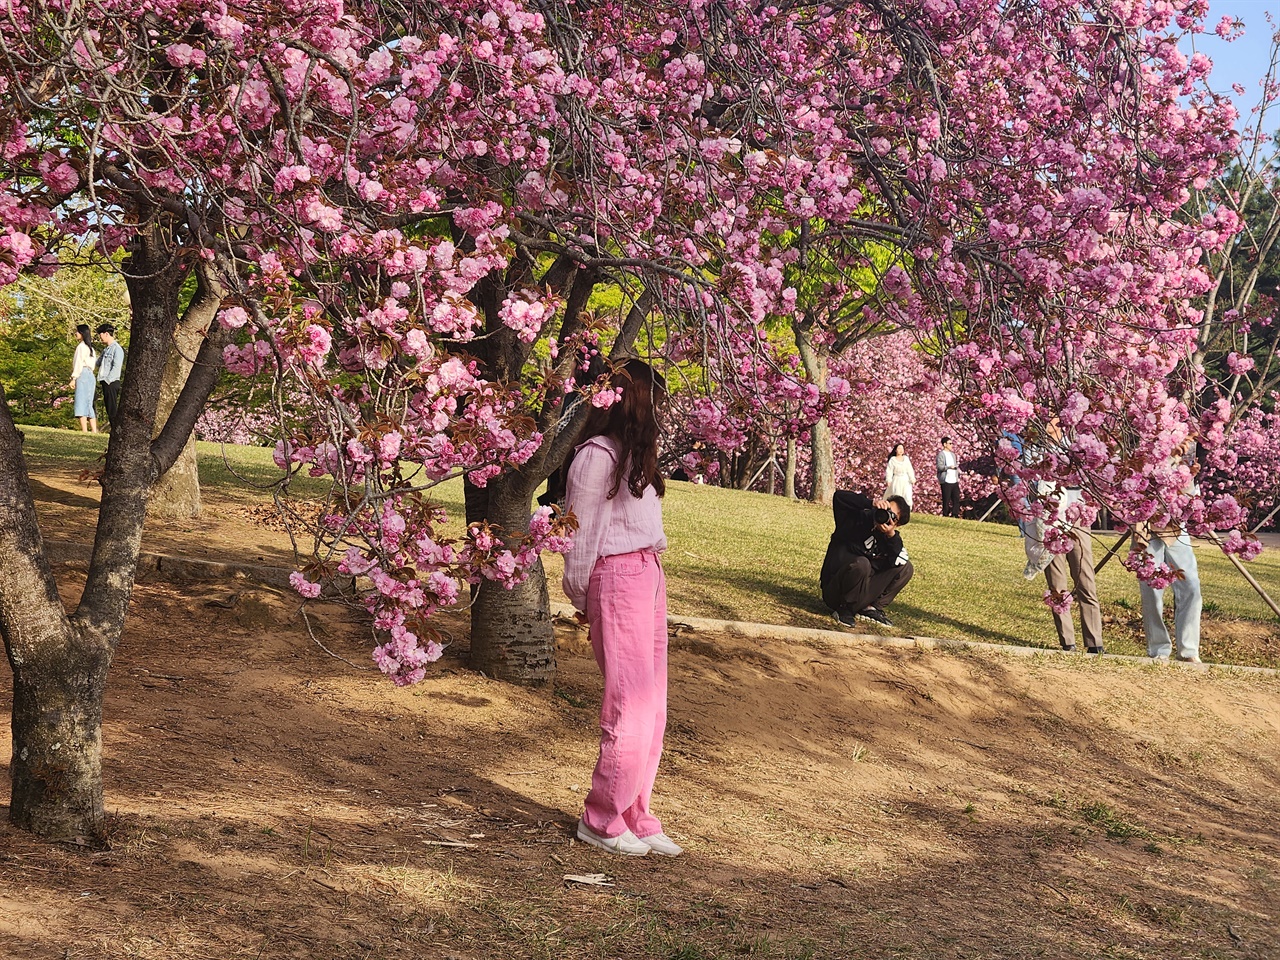  짙은 분홍색 겹벚꽃에서 사진 촬영에 여념이 없는 관광객 모습(2023.4.10)